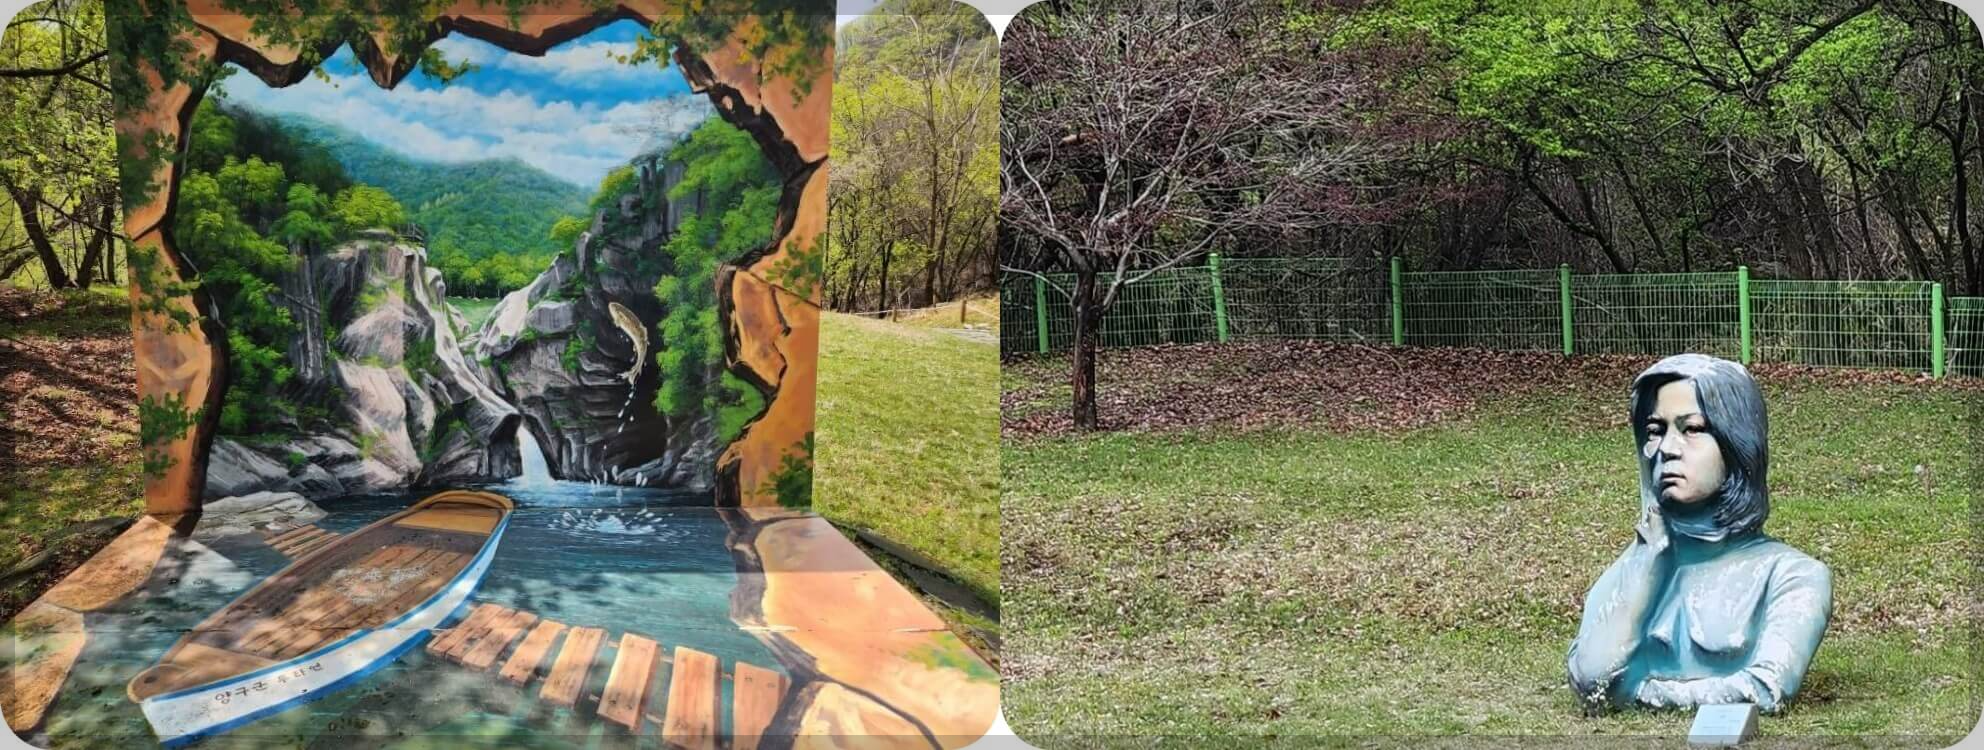 두타연 포토존과 조각공원